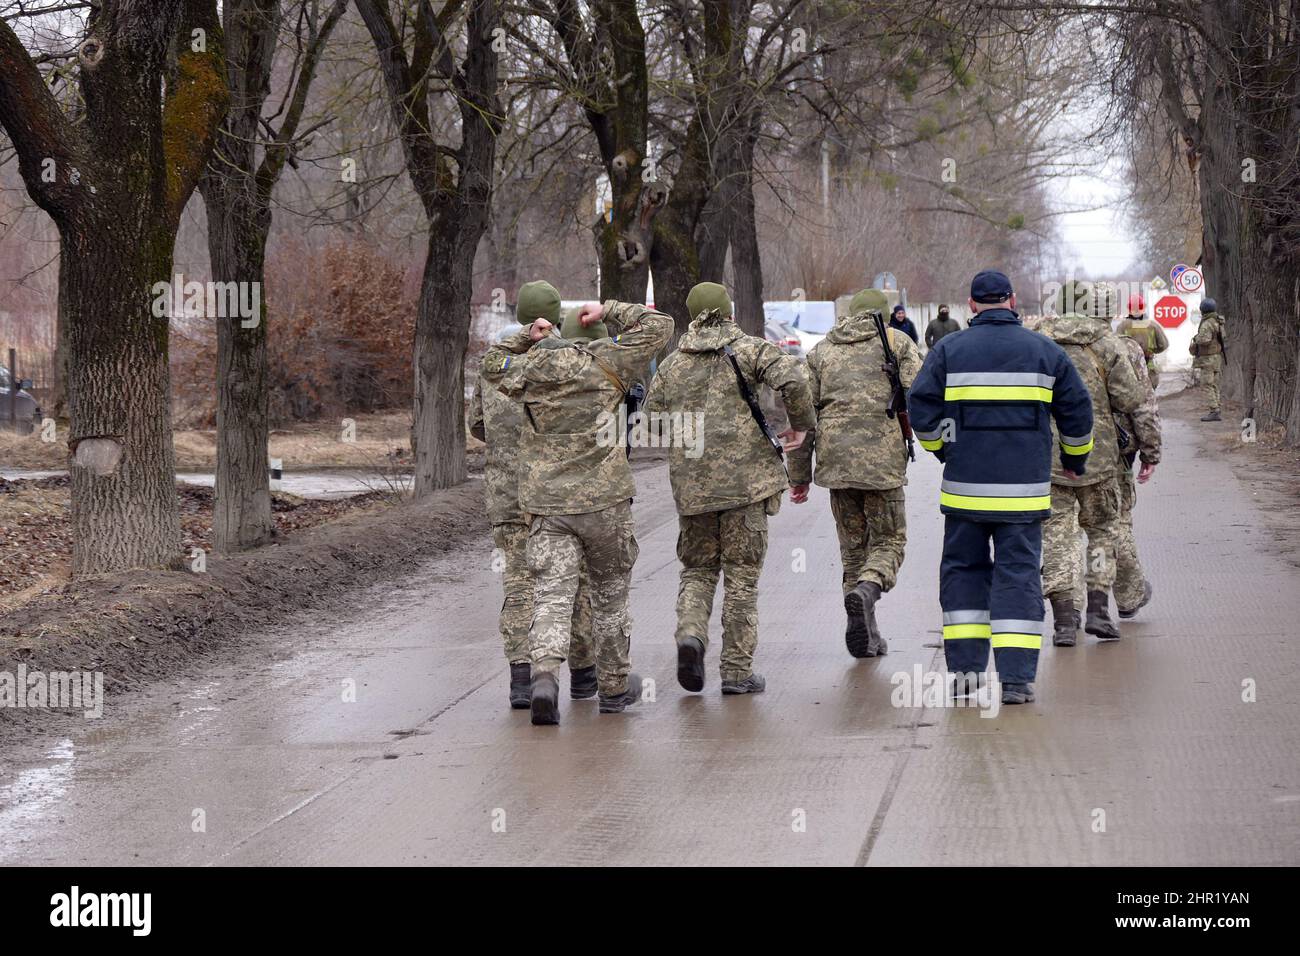 IVANO-FRANKIWSK, UKRAINE - 24. FEBRUAR 2022 - bewaffnete Männer in Tarnuniformen sind auf den Straßen von Ivano-Frankiwsk, Westukraine, zu sehen. Stockfoto